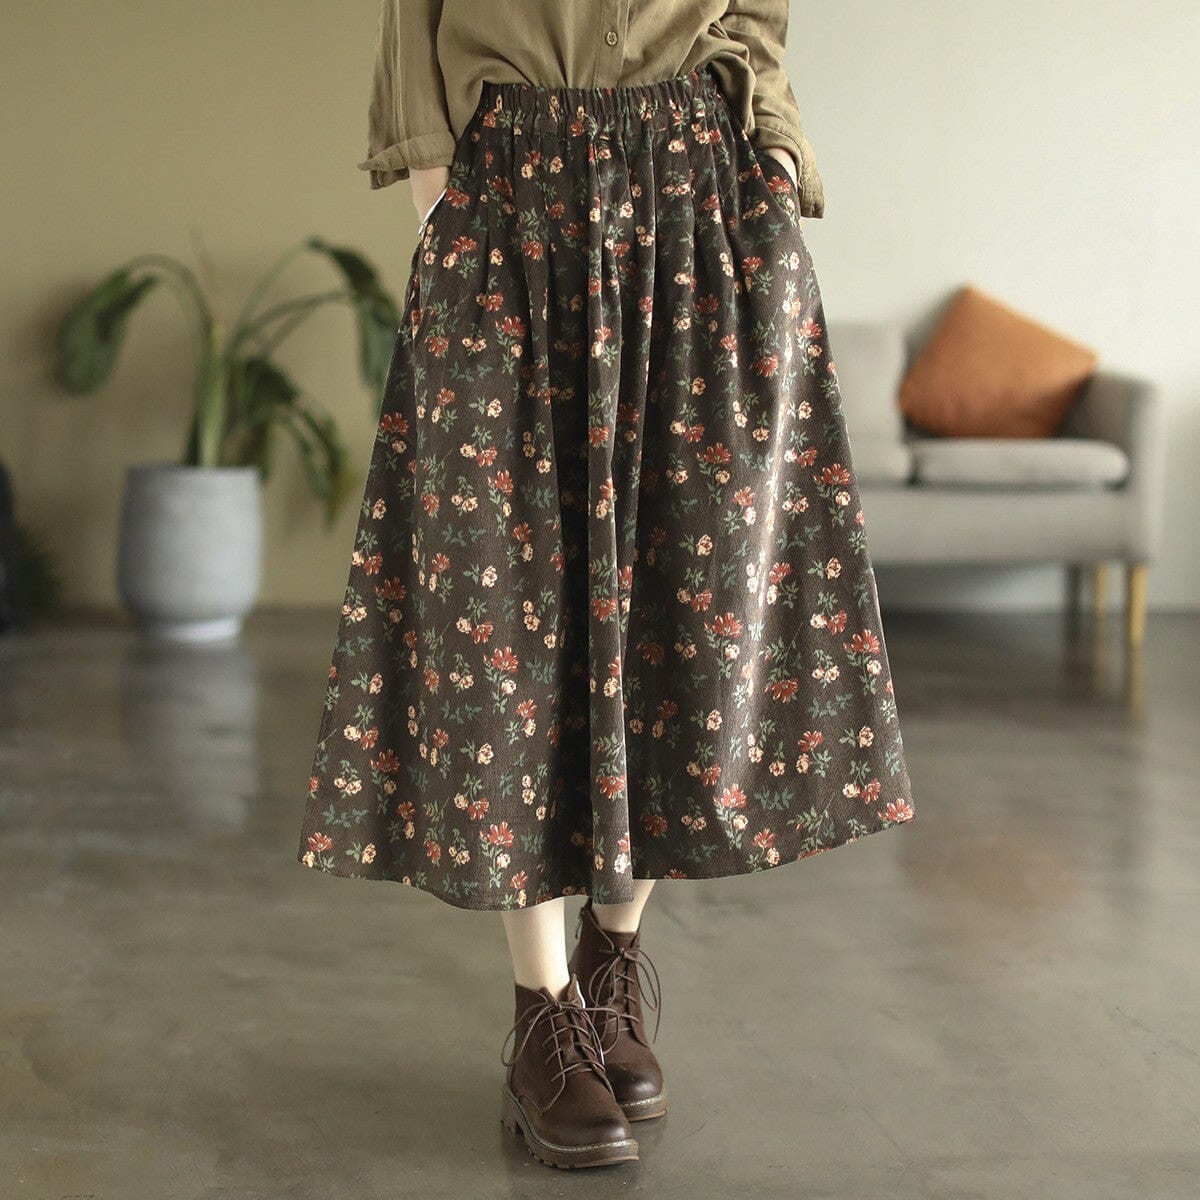 Autumn Retro Corduroy Print Floral Skirt